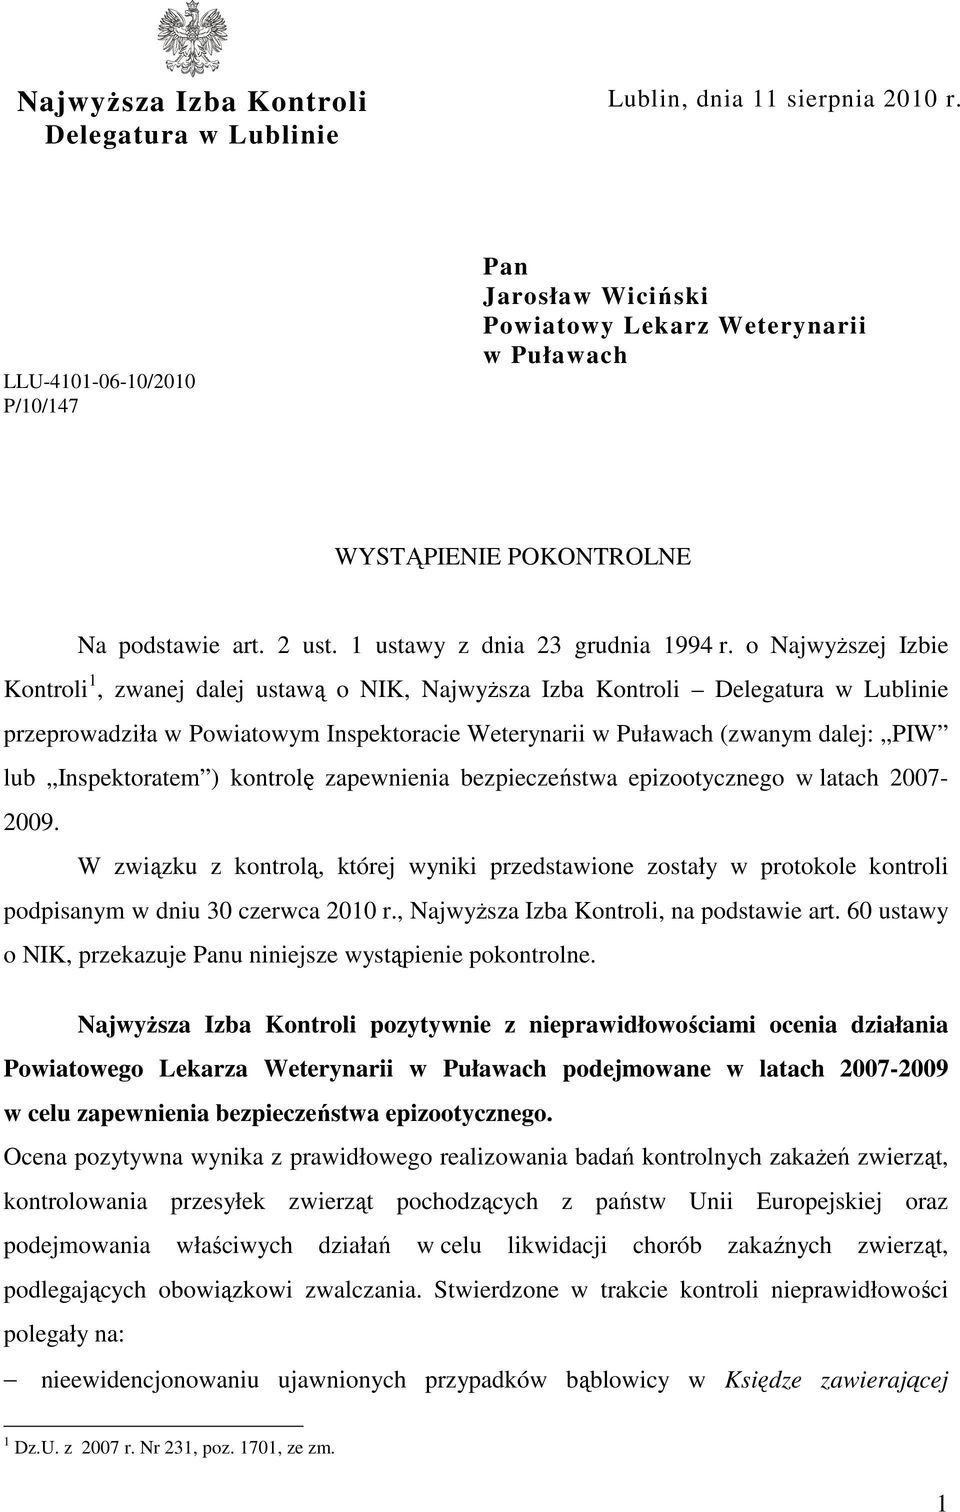 o NajwyŜszej Izbie Kontroli 1, zwanej dalej ustawą o NIK, NajwyŜsza Izba Kontroli Delegatura w Lublinie przeprowadziła w Powiatowym Inspektoracie Weterynarii w Puławach (zwanym dalej: PIW lub